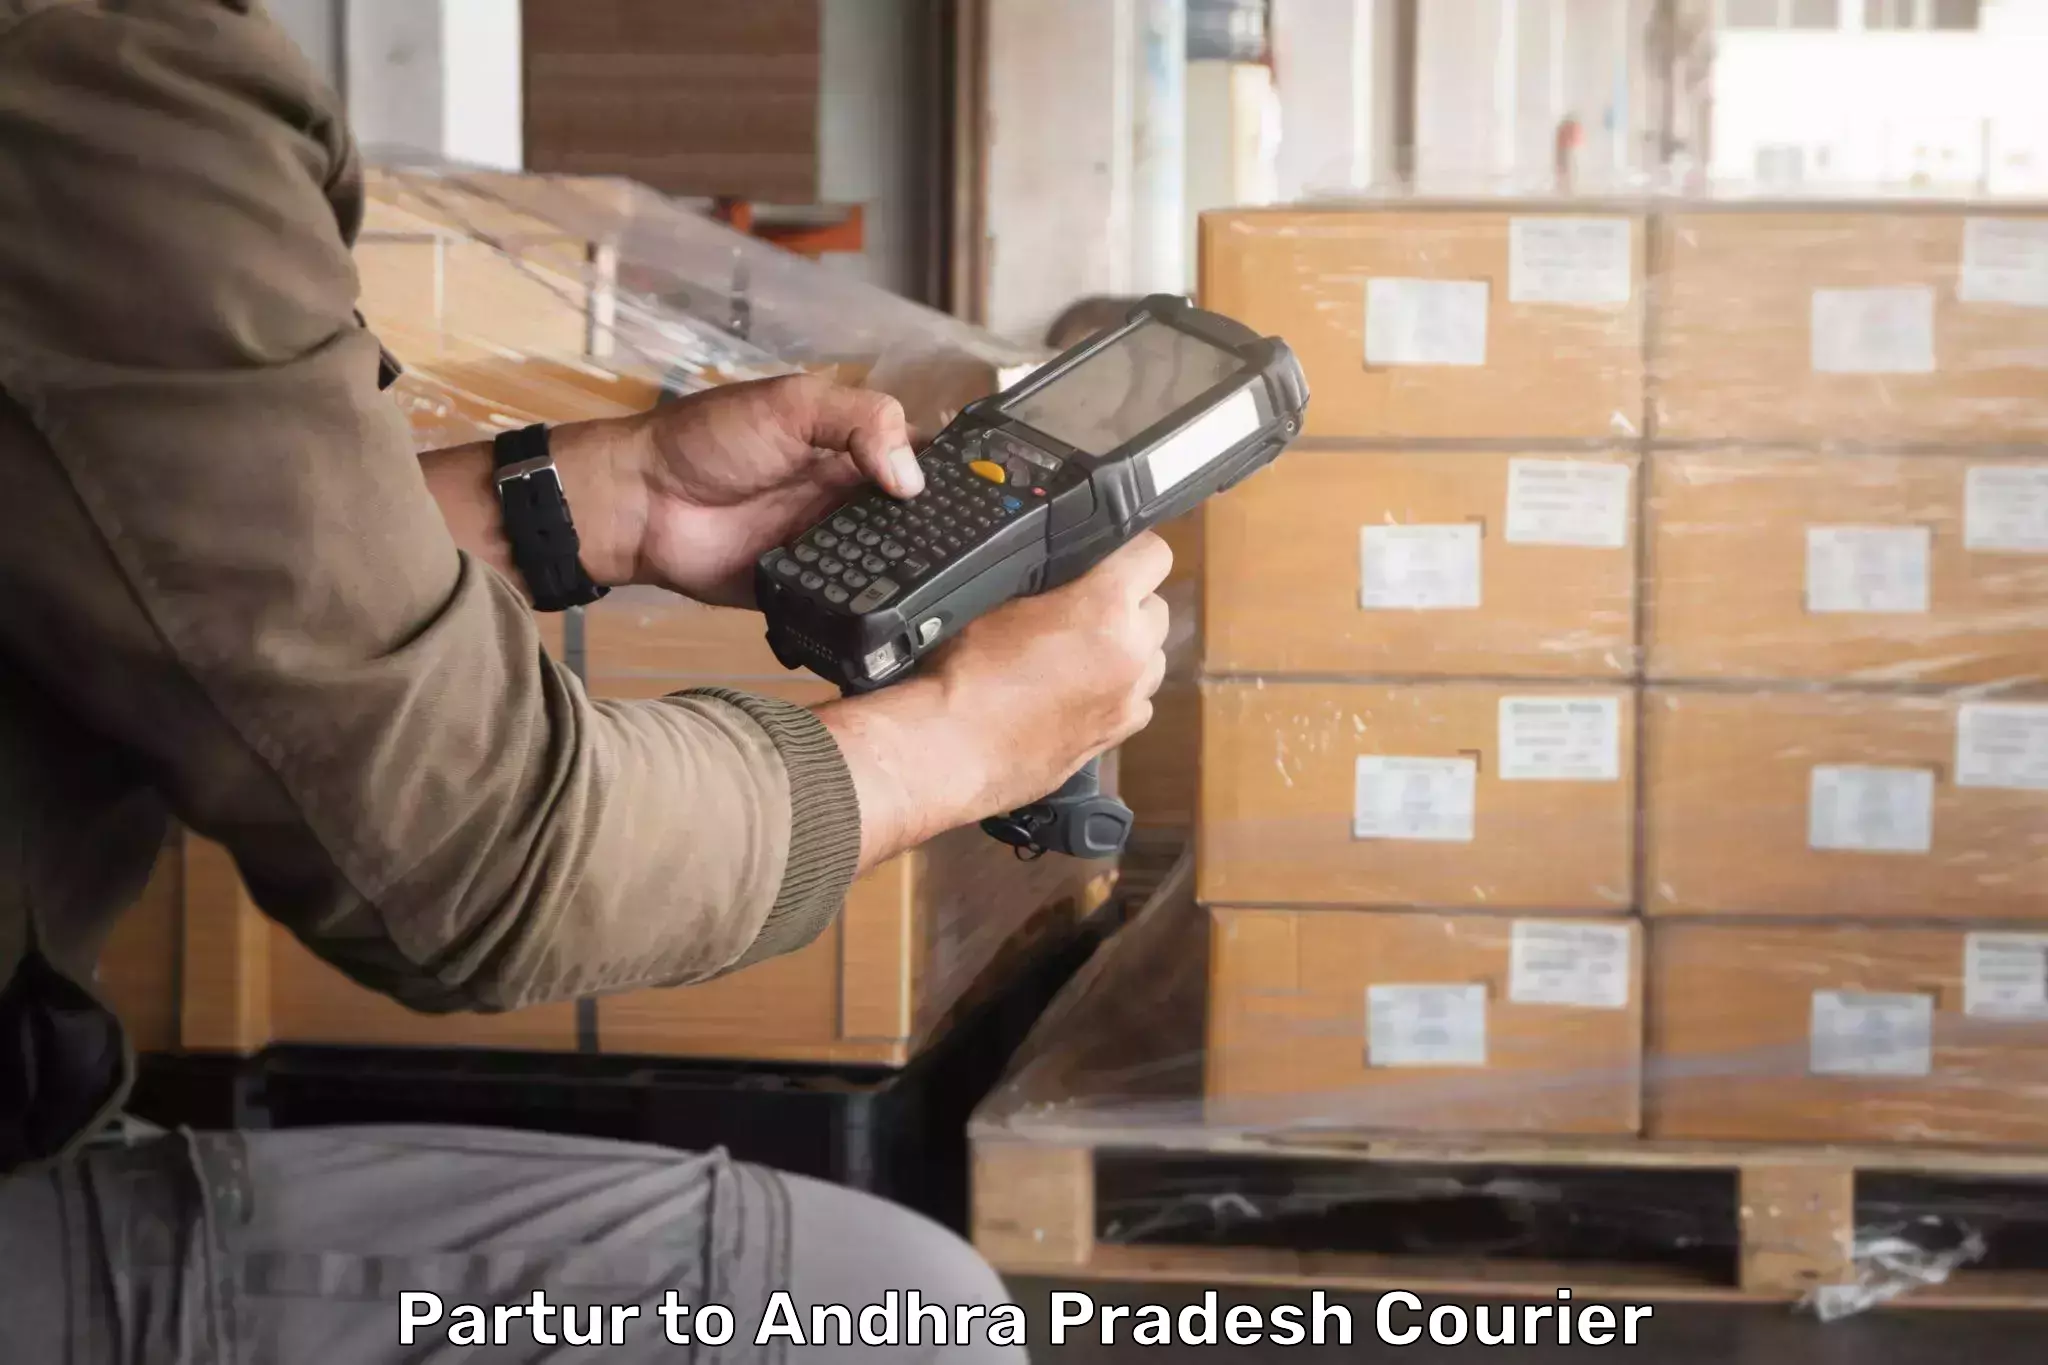 Courier dispatch services Partur to Devarapalli